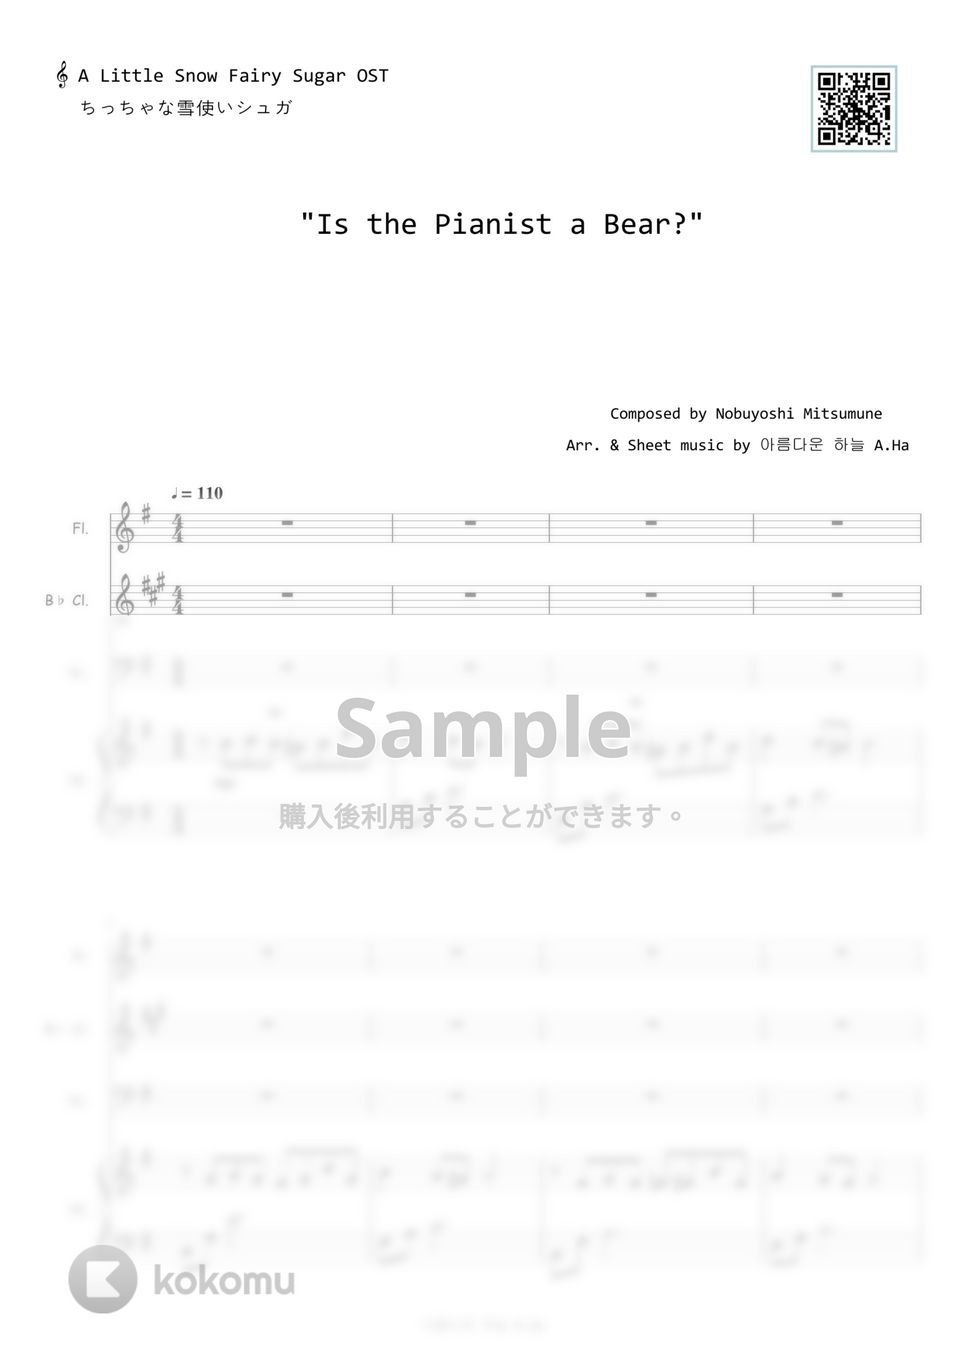 ちっちゃな雪使いシュガー - Is the Pianist a Bear? (カルテット) by A.Ha